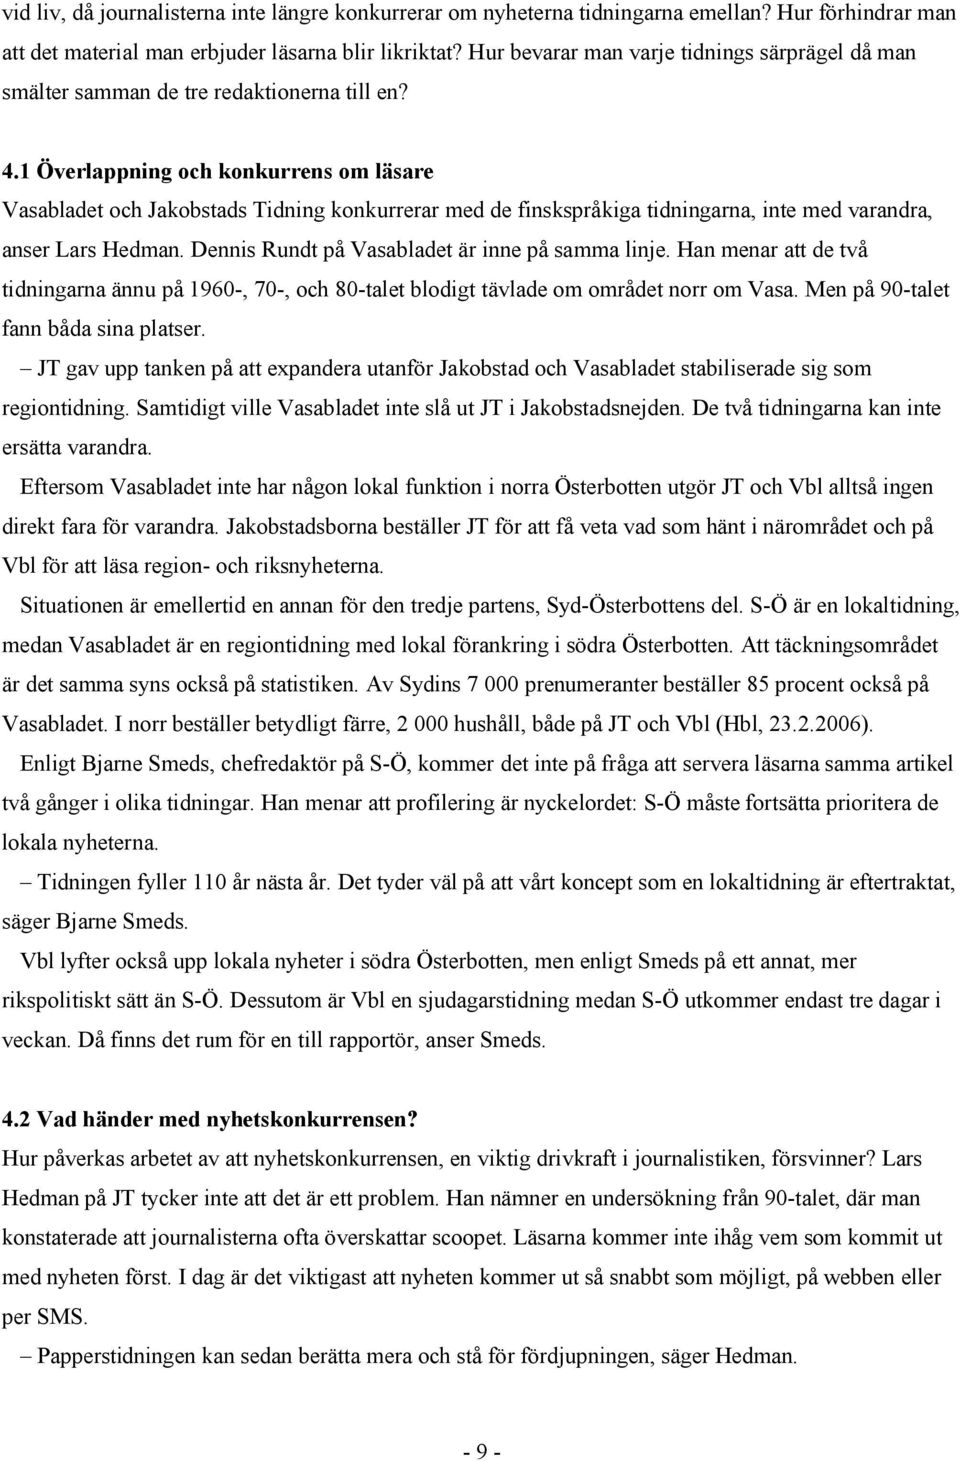 1 Överlappning och konkurrens om läsare Vasabladet och Jakobstads Tidning konkurrerar med de finskspråkiga tidningarna, inte med varandra, anser Lars Hedman.